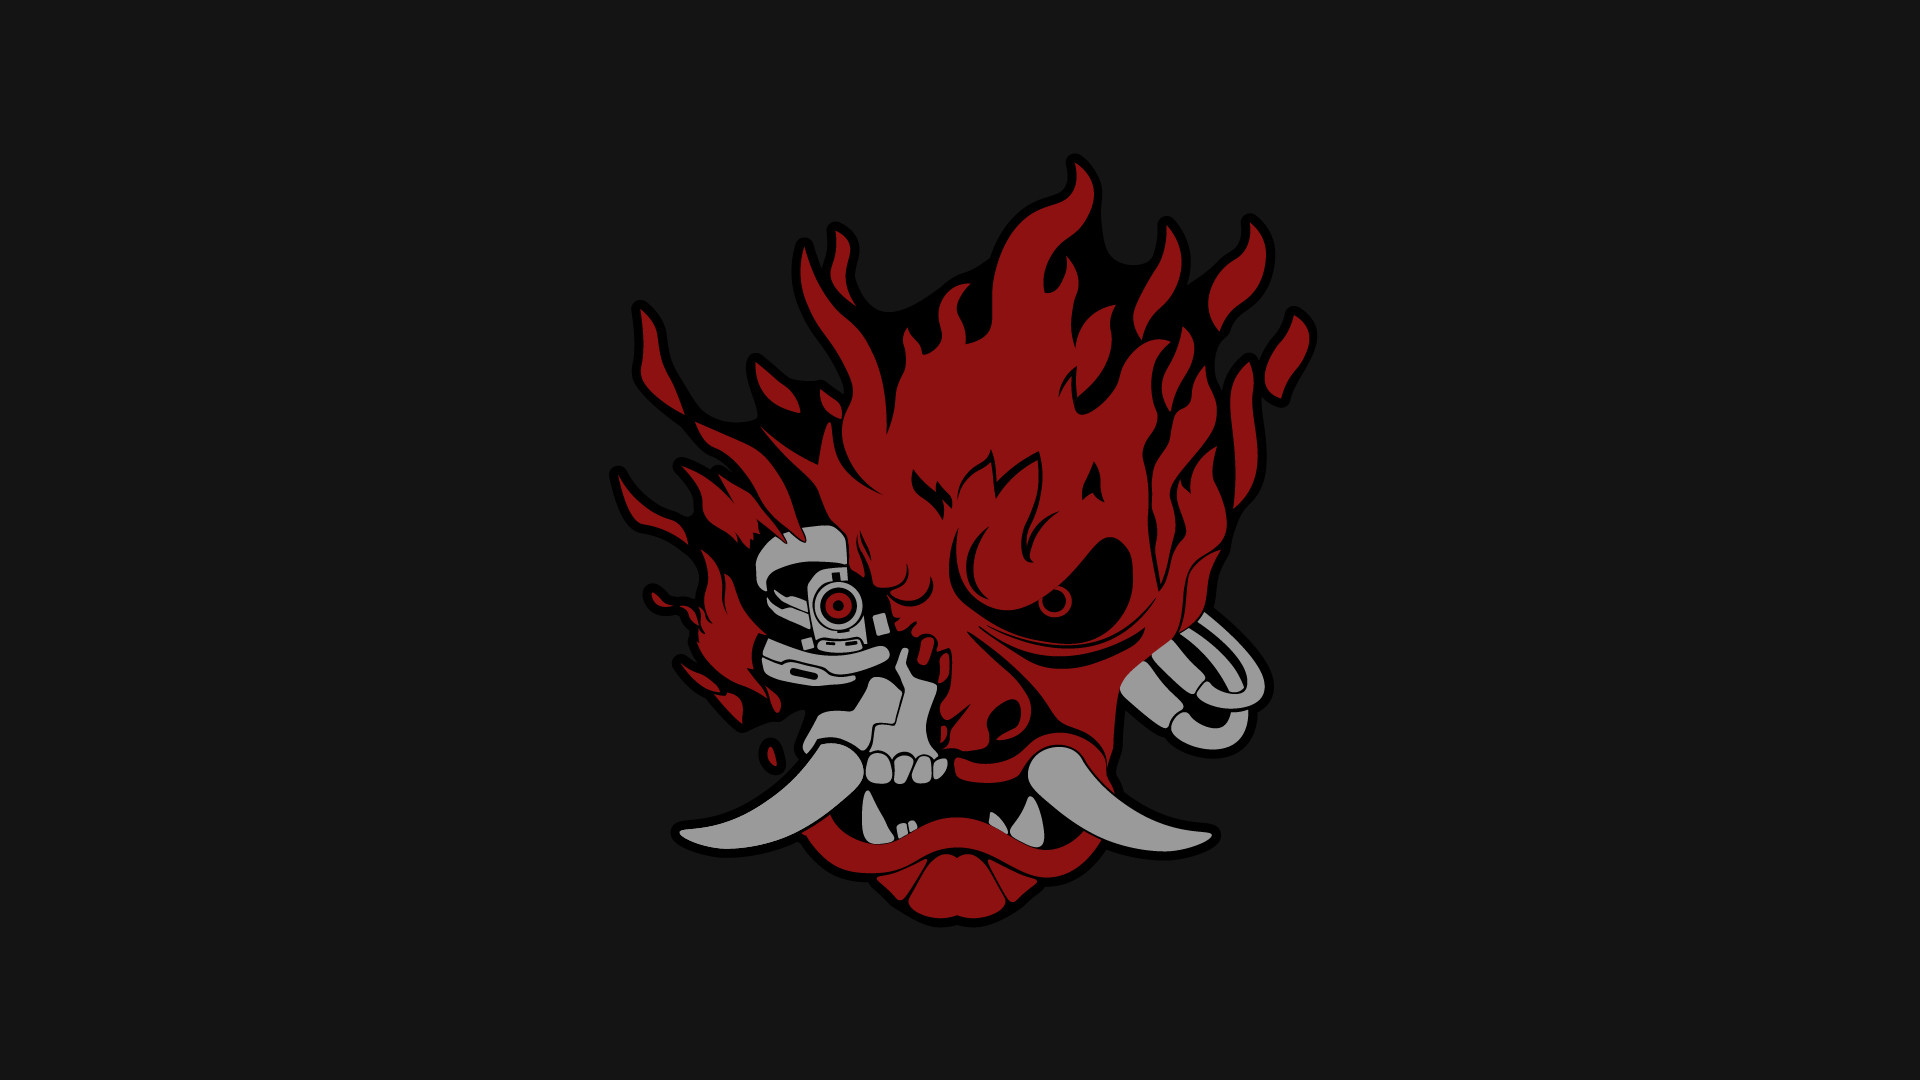 Samurai логотип cyberpunk фото 19